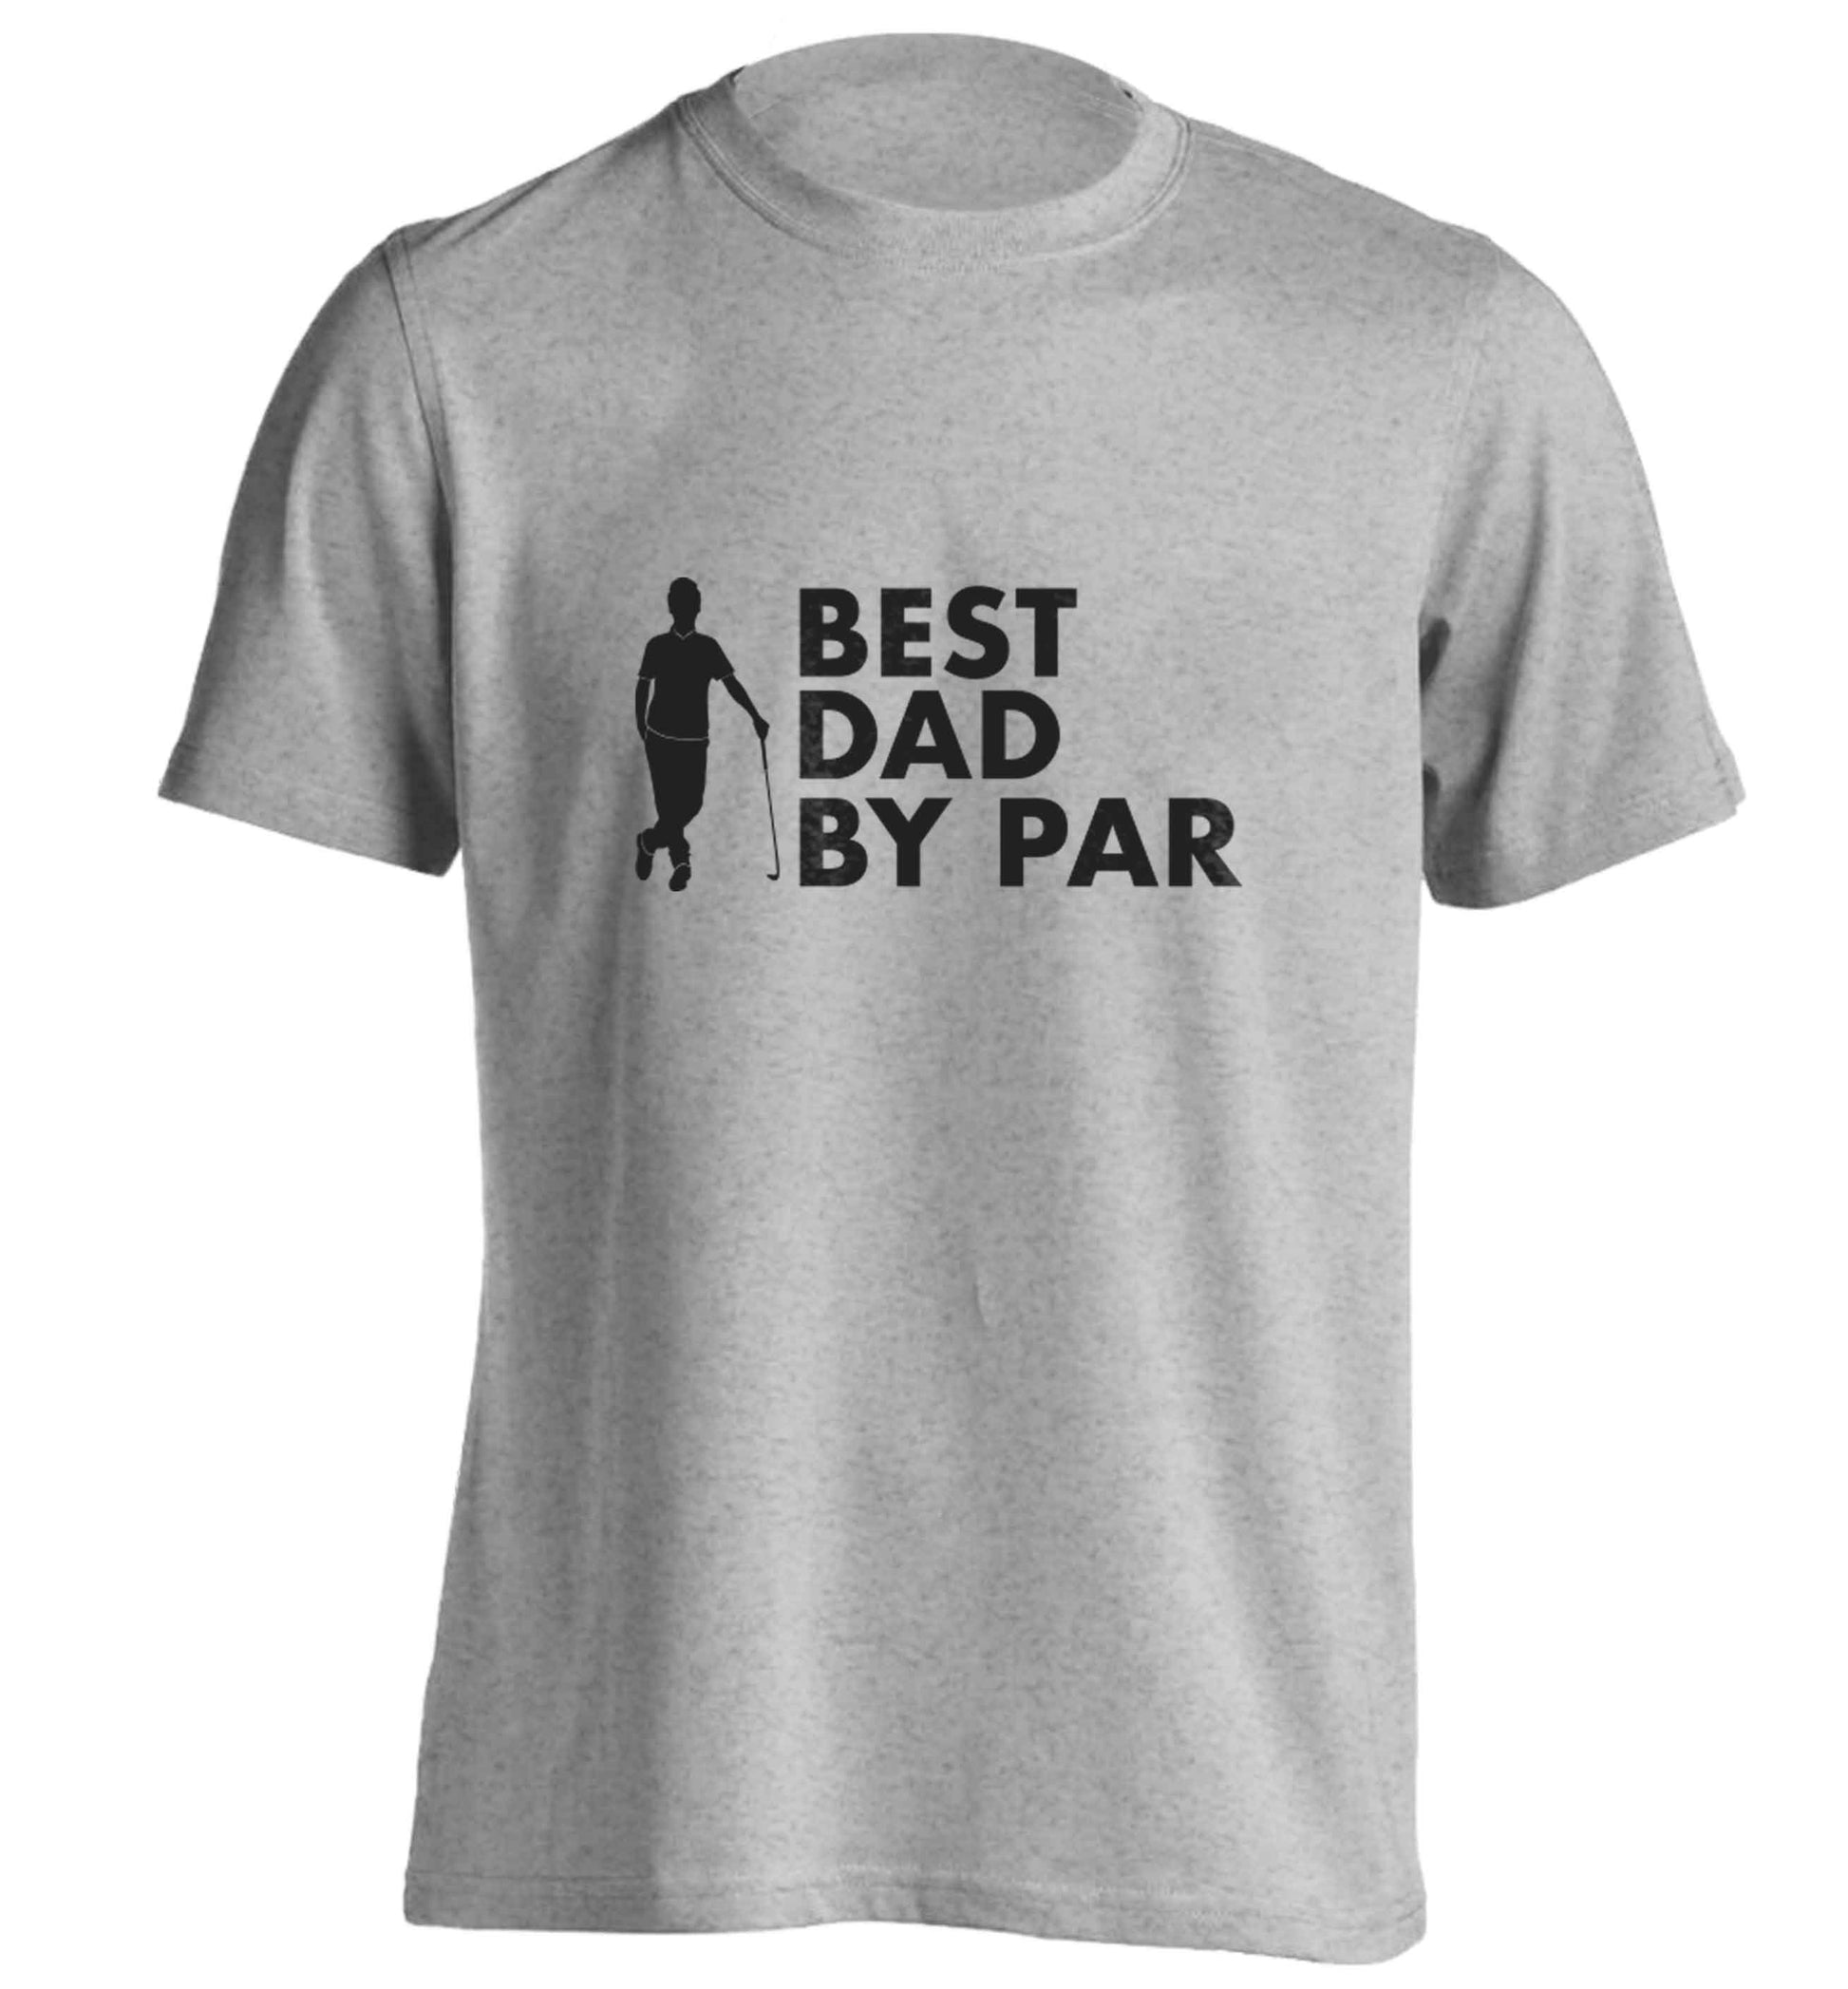 Best dad by par adults unisex grey Tshirt 2XL